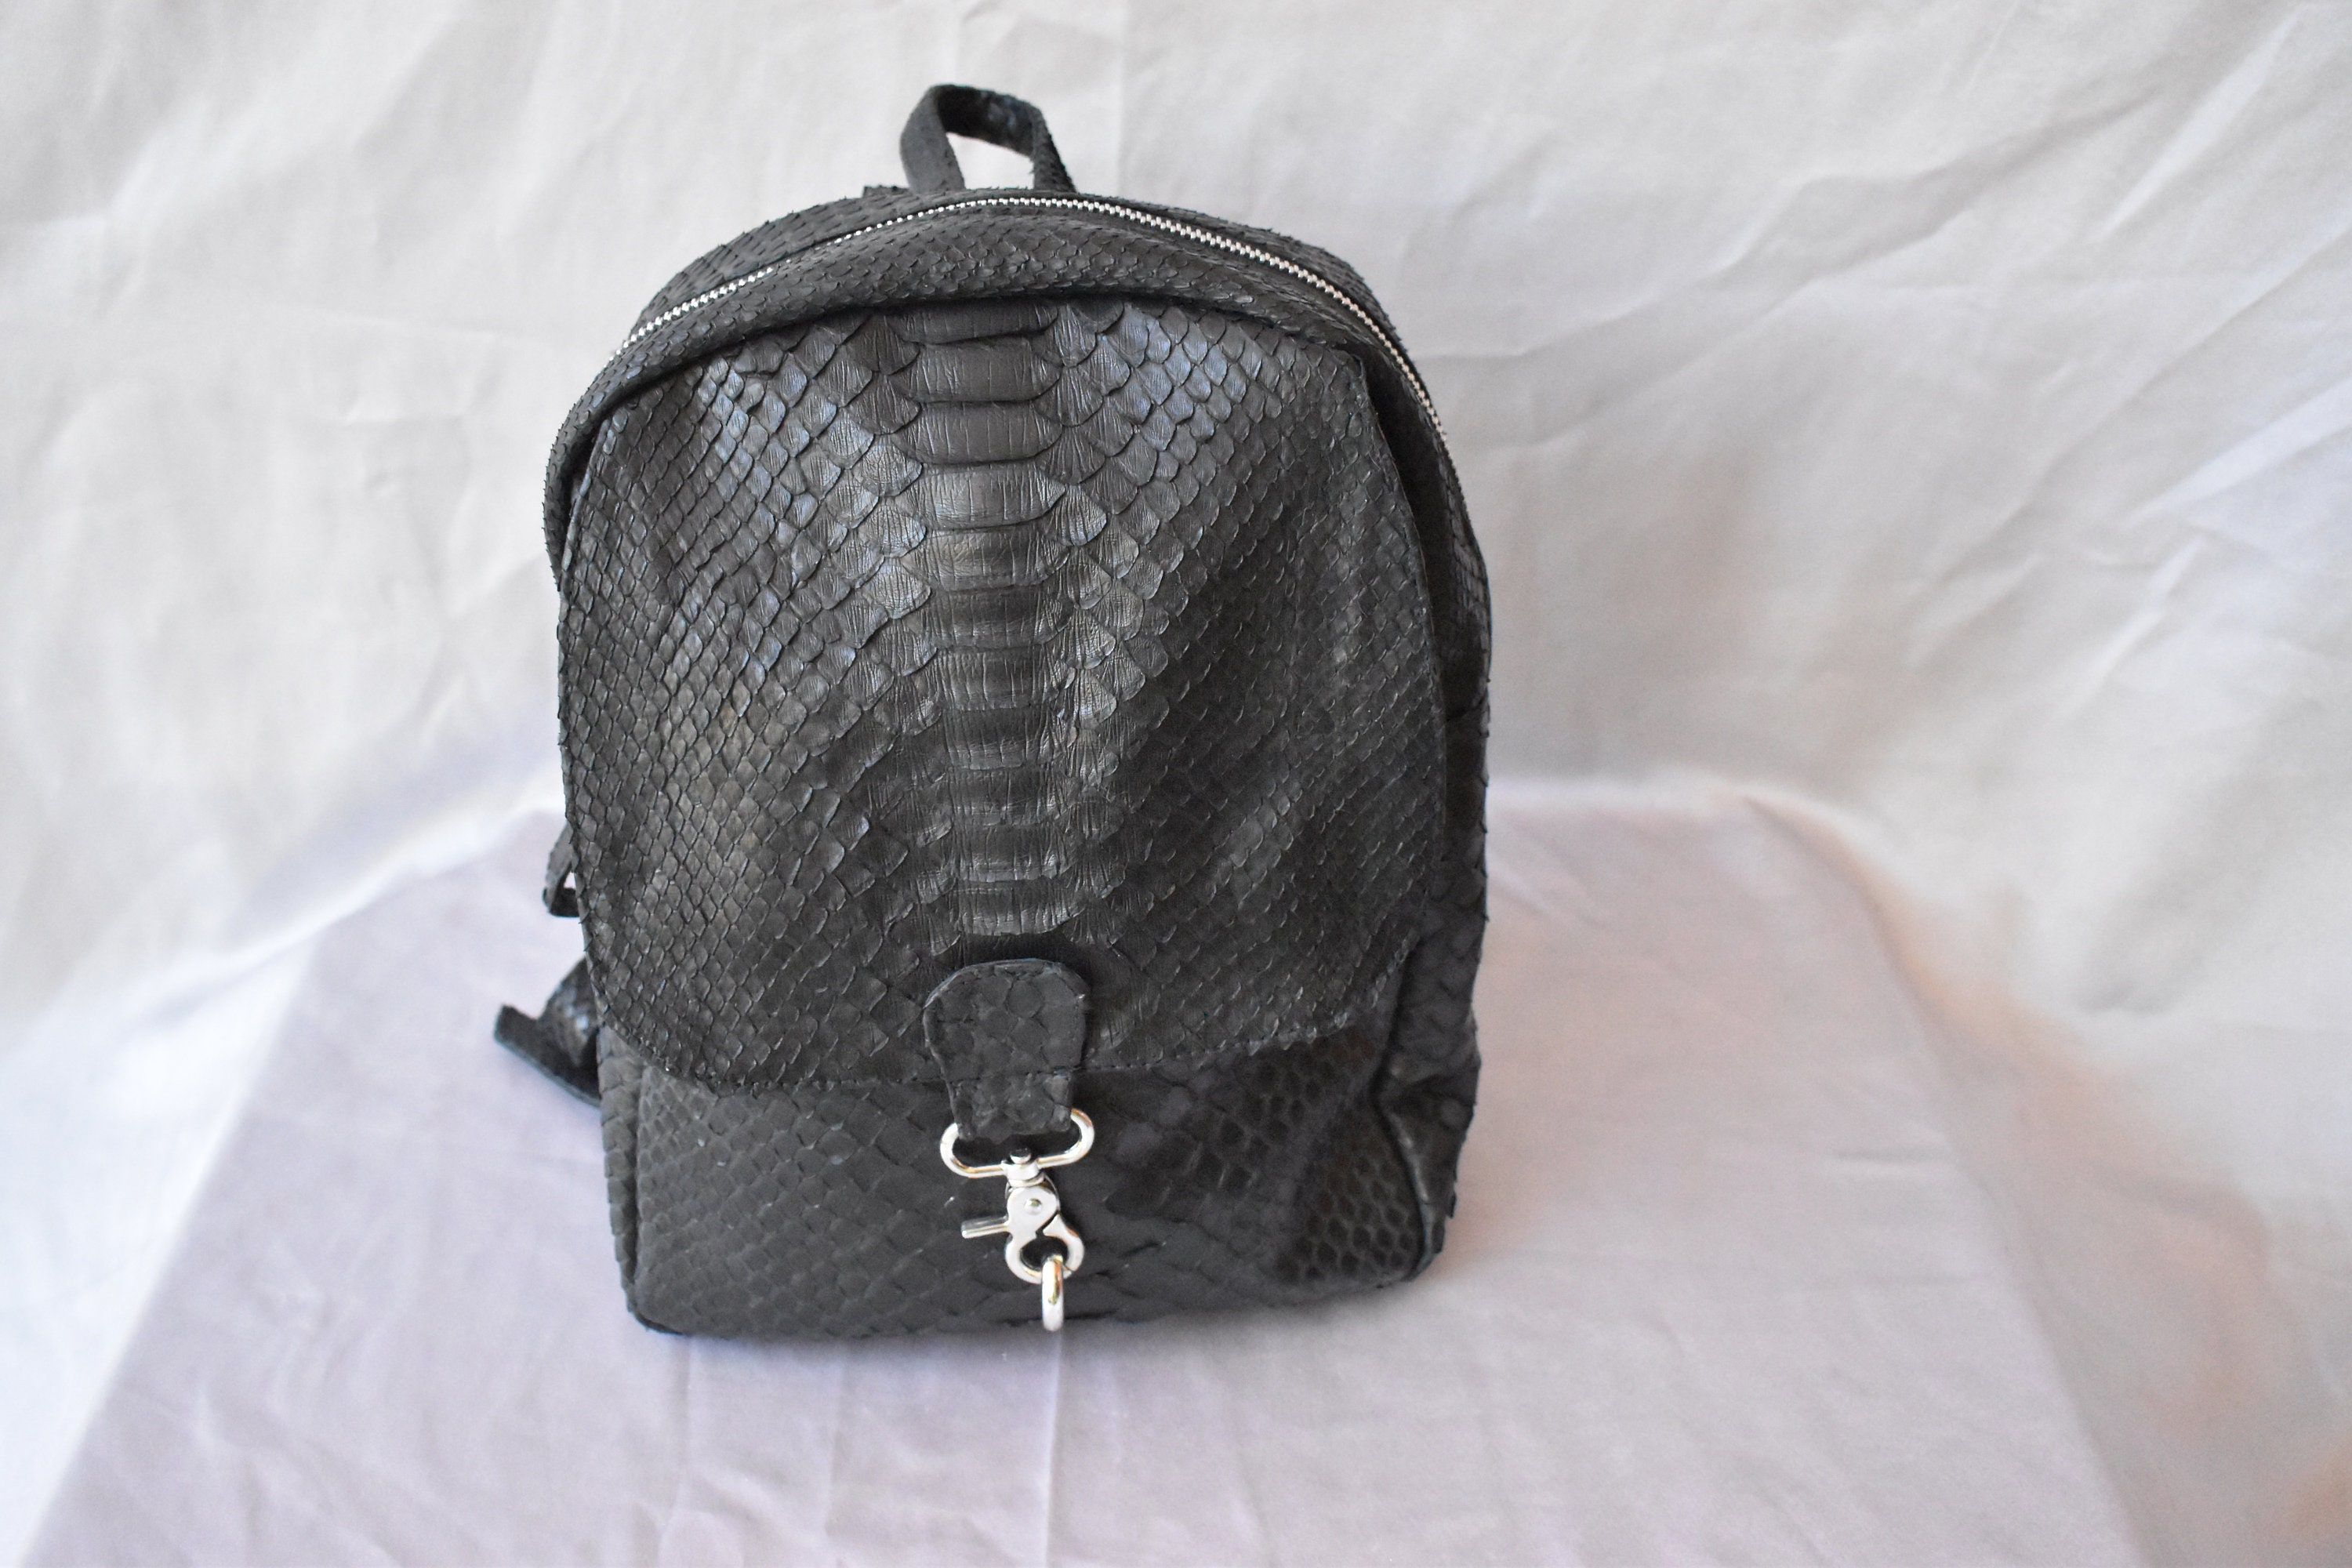 Snake skin designer backpack for women Genuine Python leather | Etsy